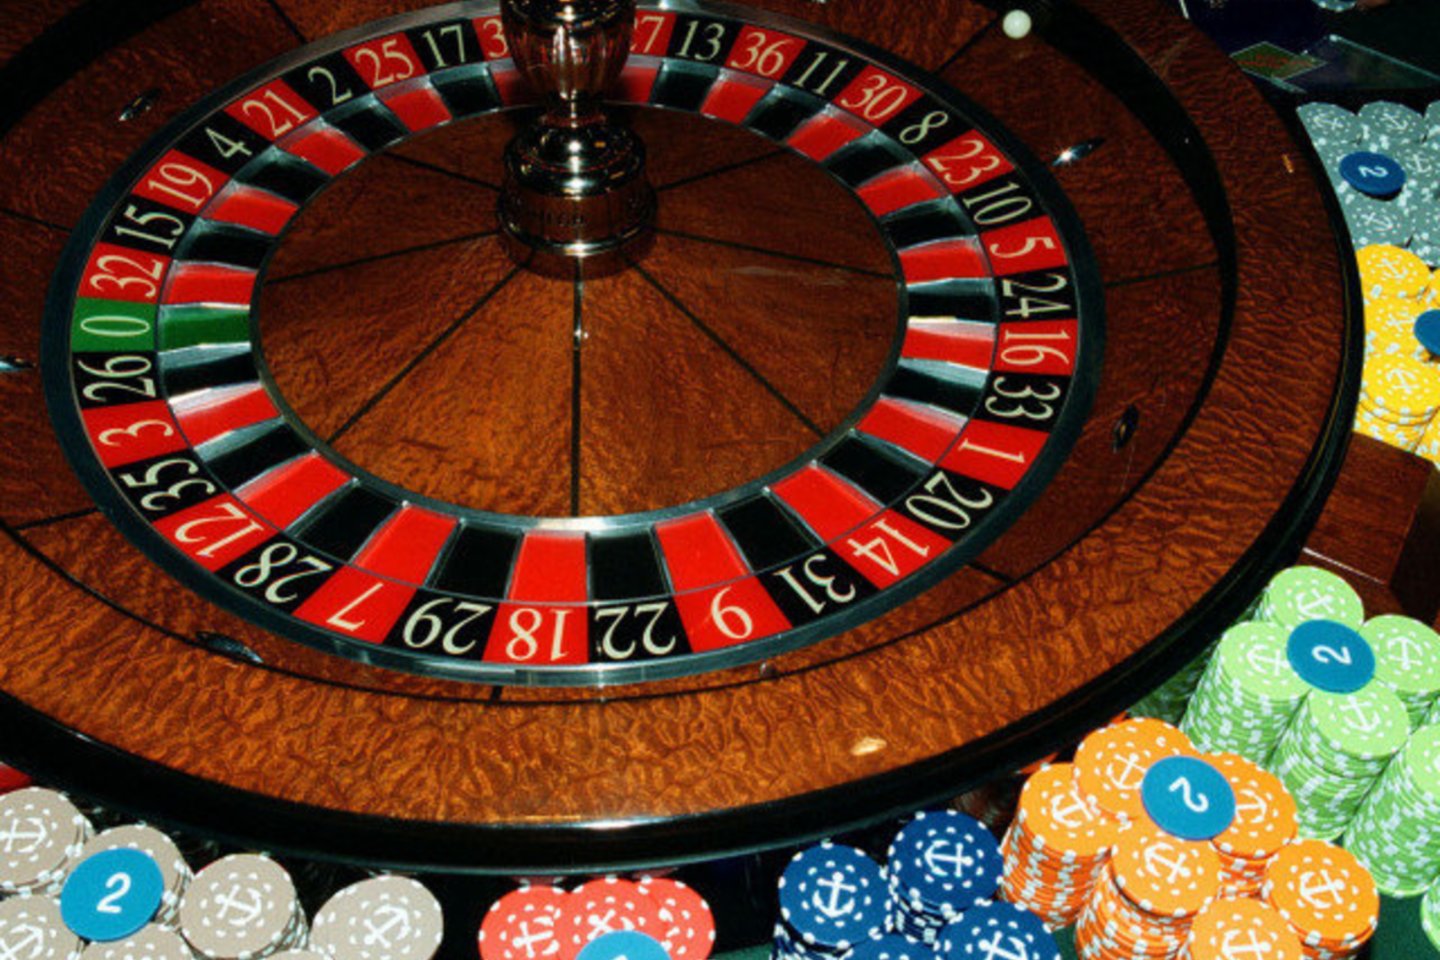 Vyriausybei leidus nuo pirmadienio atsidaryti lošimų namams, kazino rengiasi atnaujinti veiklą, bet dar laukia detalesnių instrukcijų.<br>M.Vidzbelis